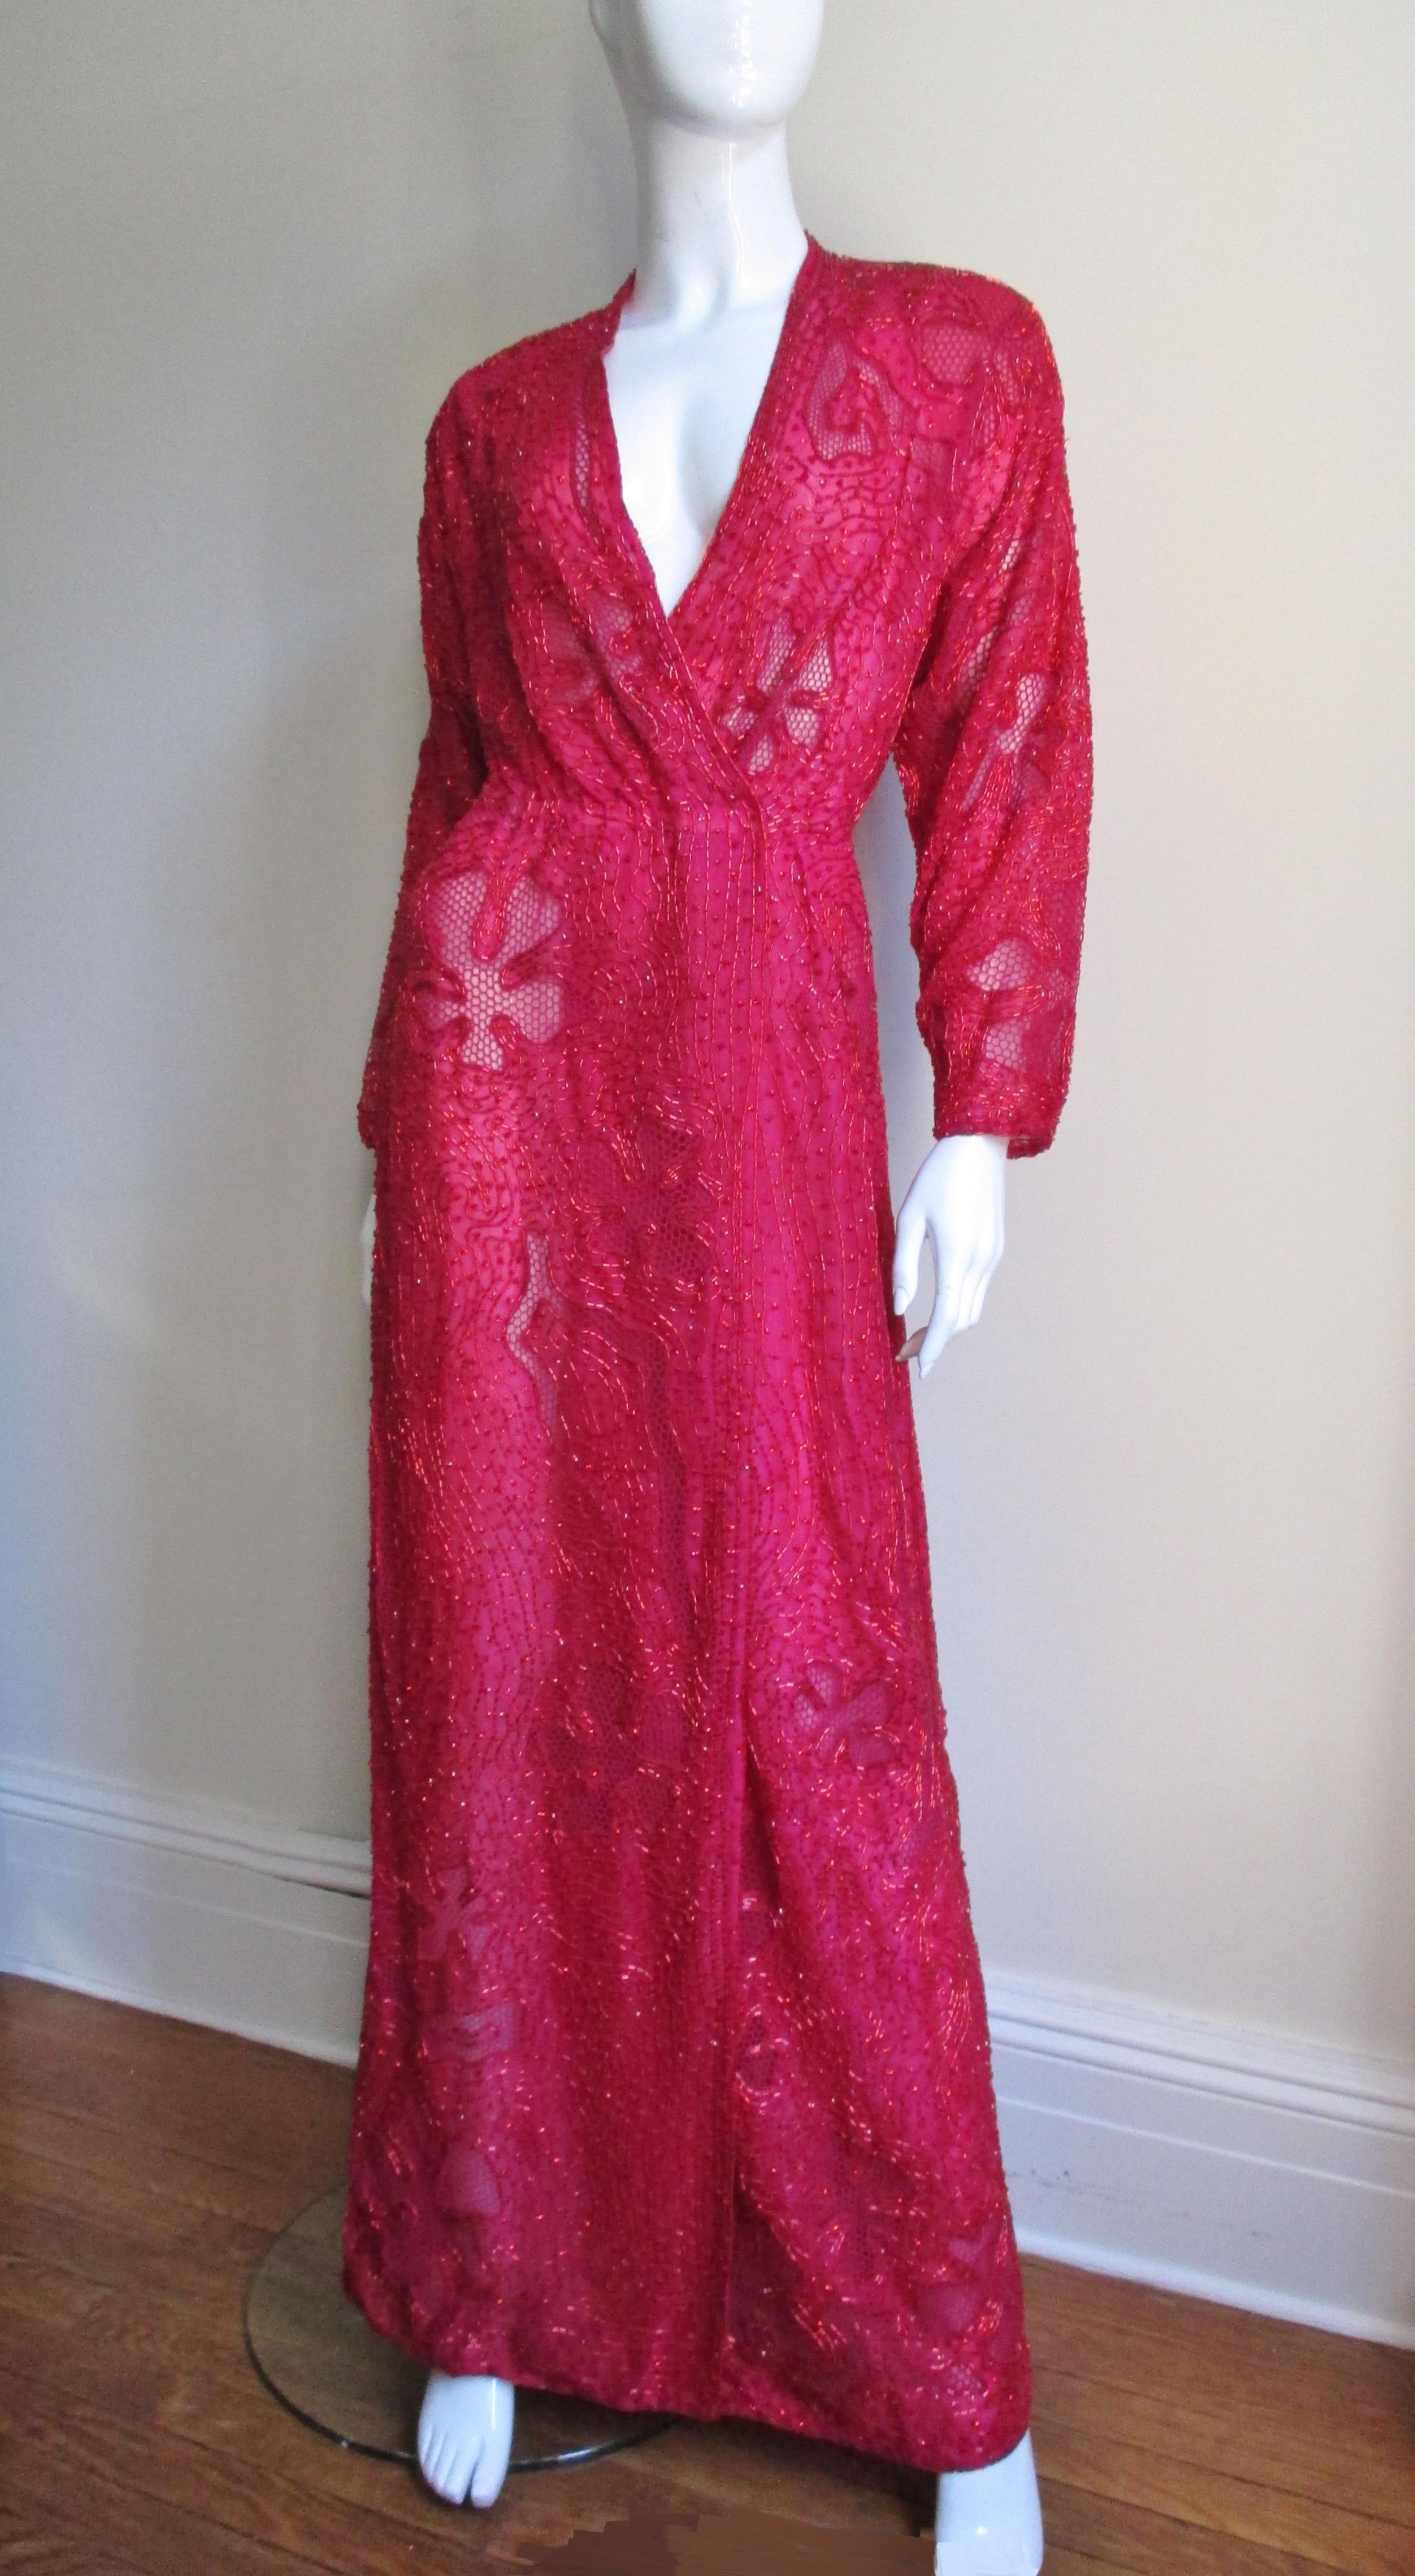 Une robe portefeuille en soie rouge perlée, élégante et incroyablement détaillée, signée Halston. La robe longue est recouverte de perles tubulaires en verre rouge dans un motif complexe de formes abstraites avec des formes recouvertes de filet